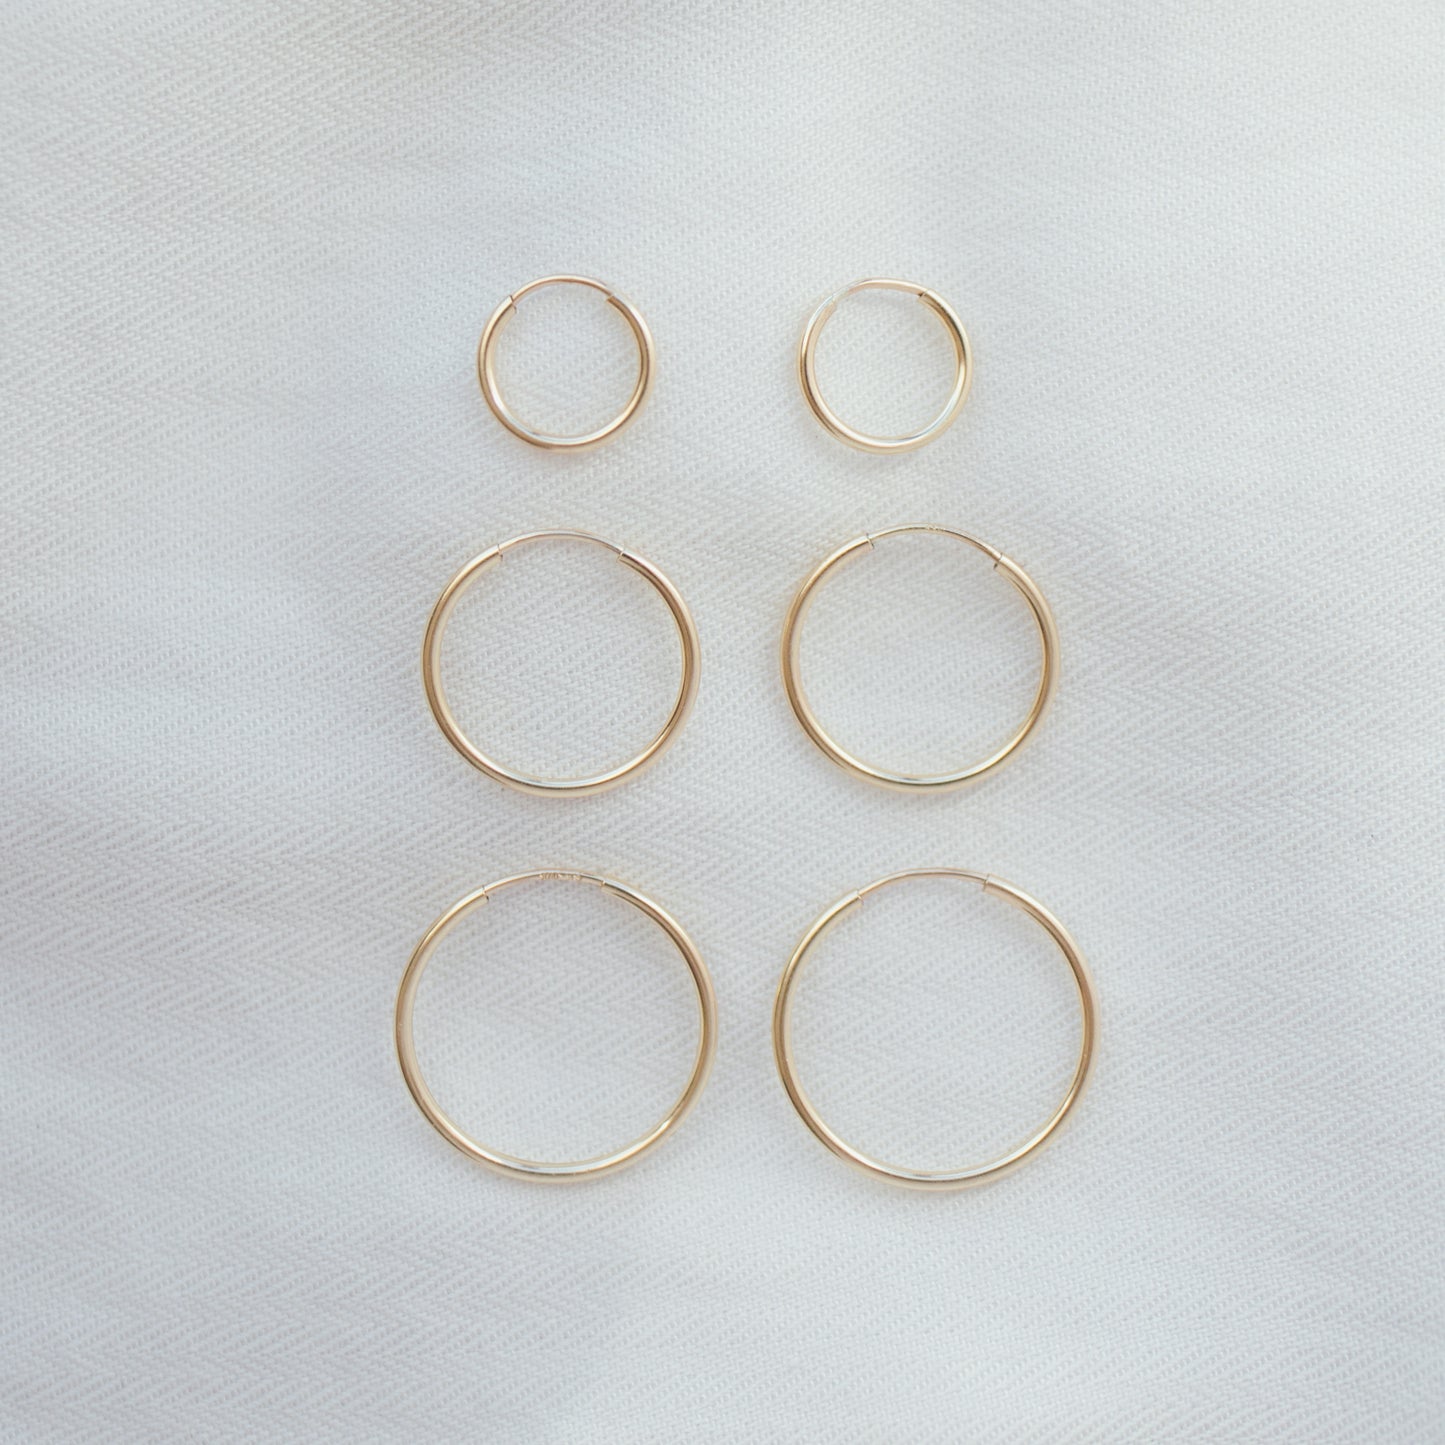 Forever Hoop Earrings 16mm (Medium) / Gold Filled